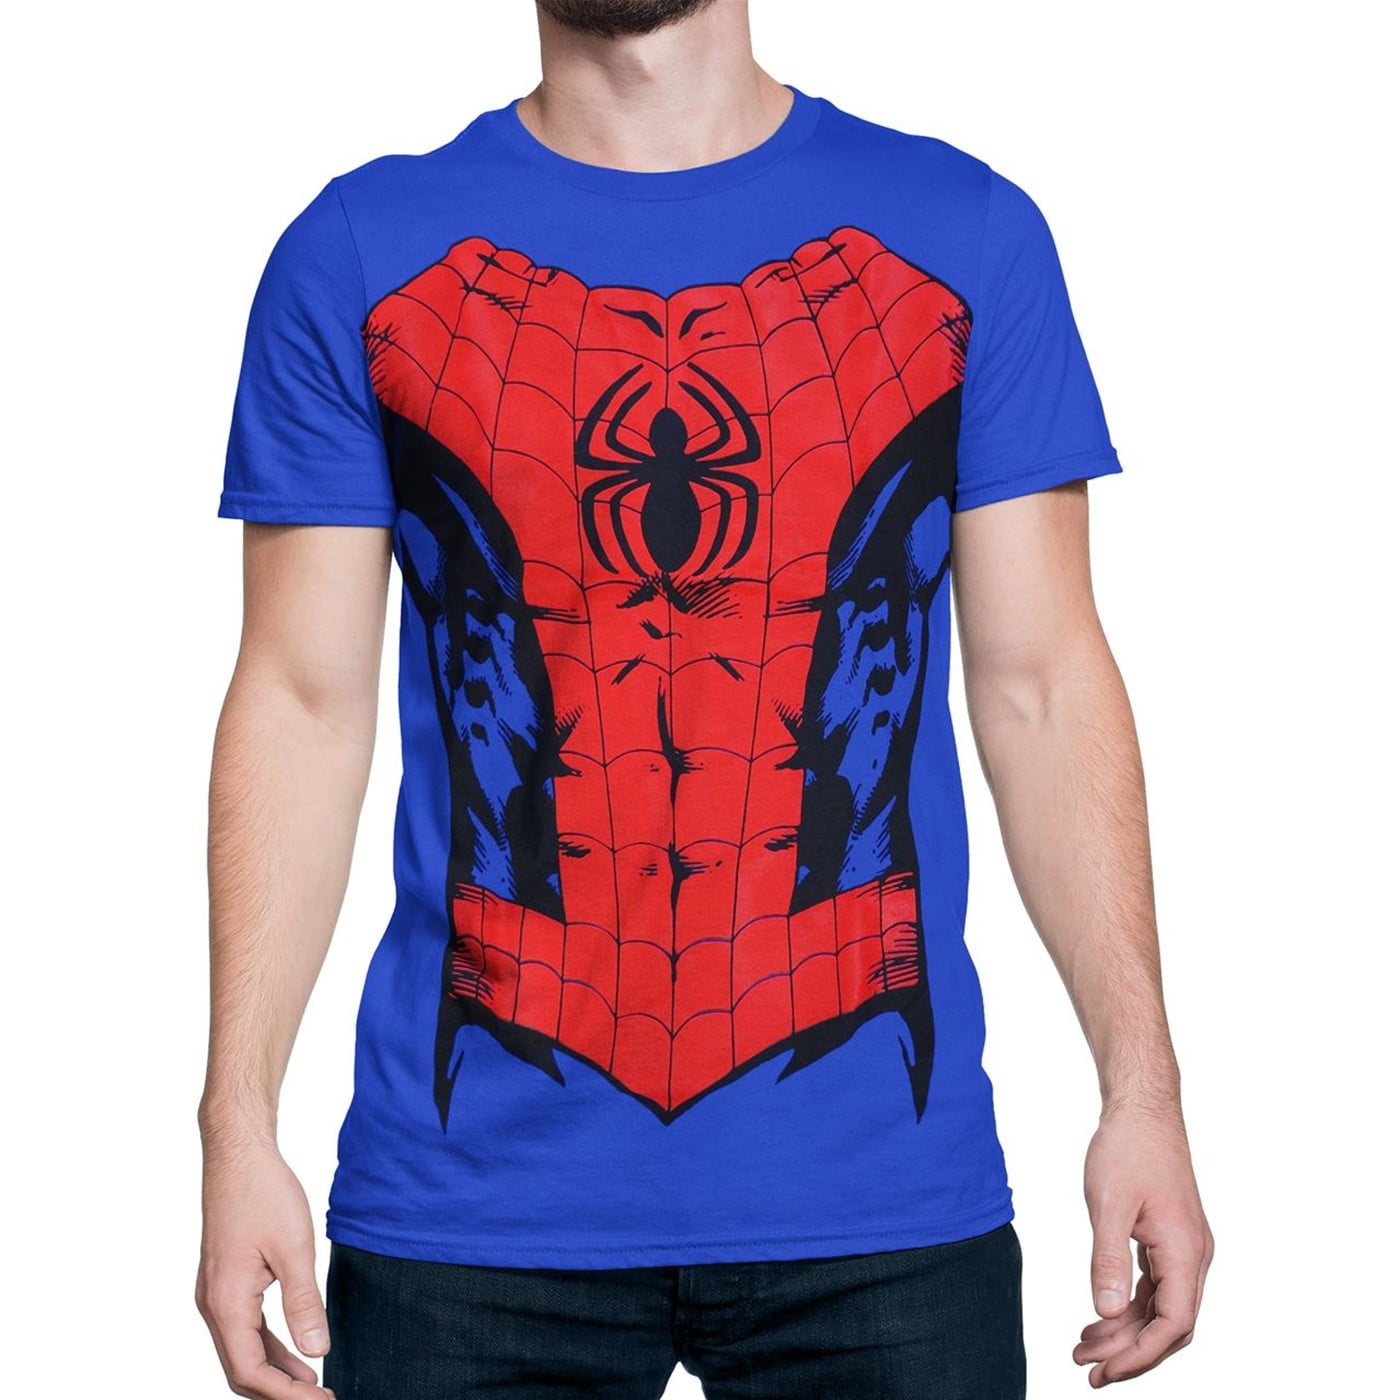 Super Hero Spider Man Costume T-shirt Original Version Size S-4XL 